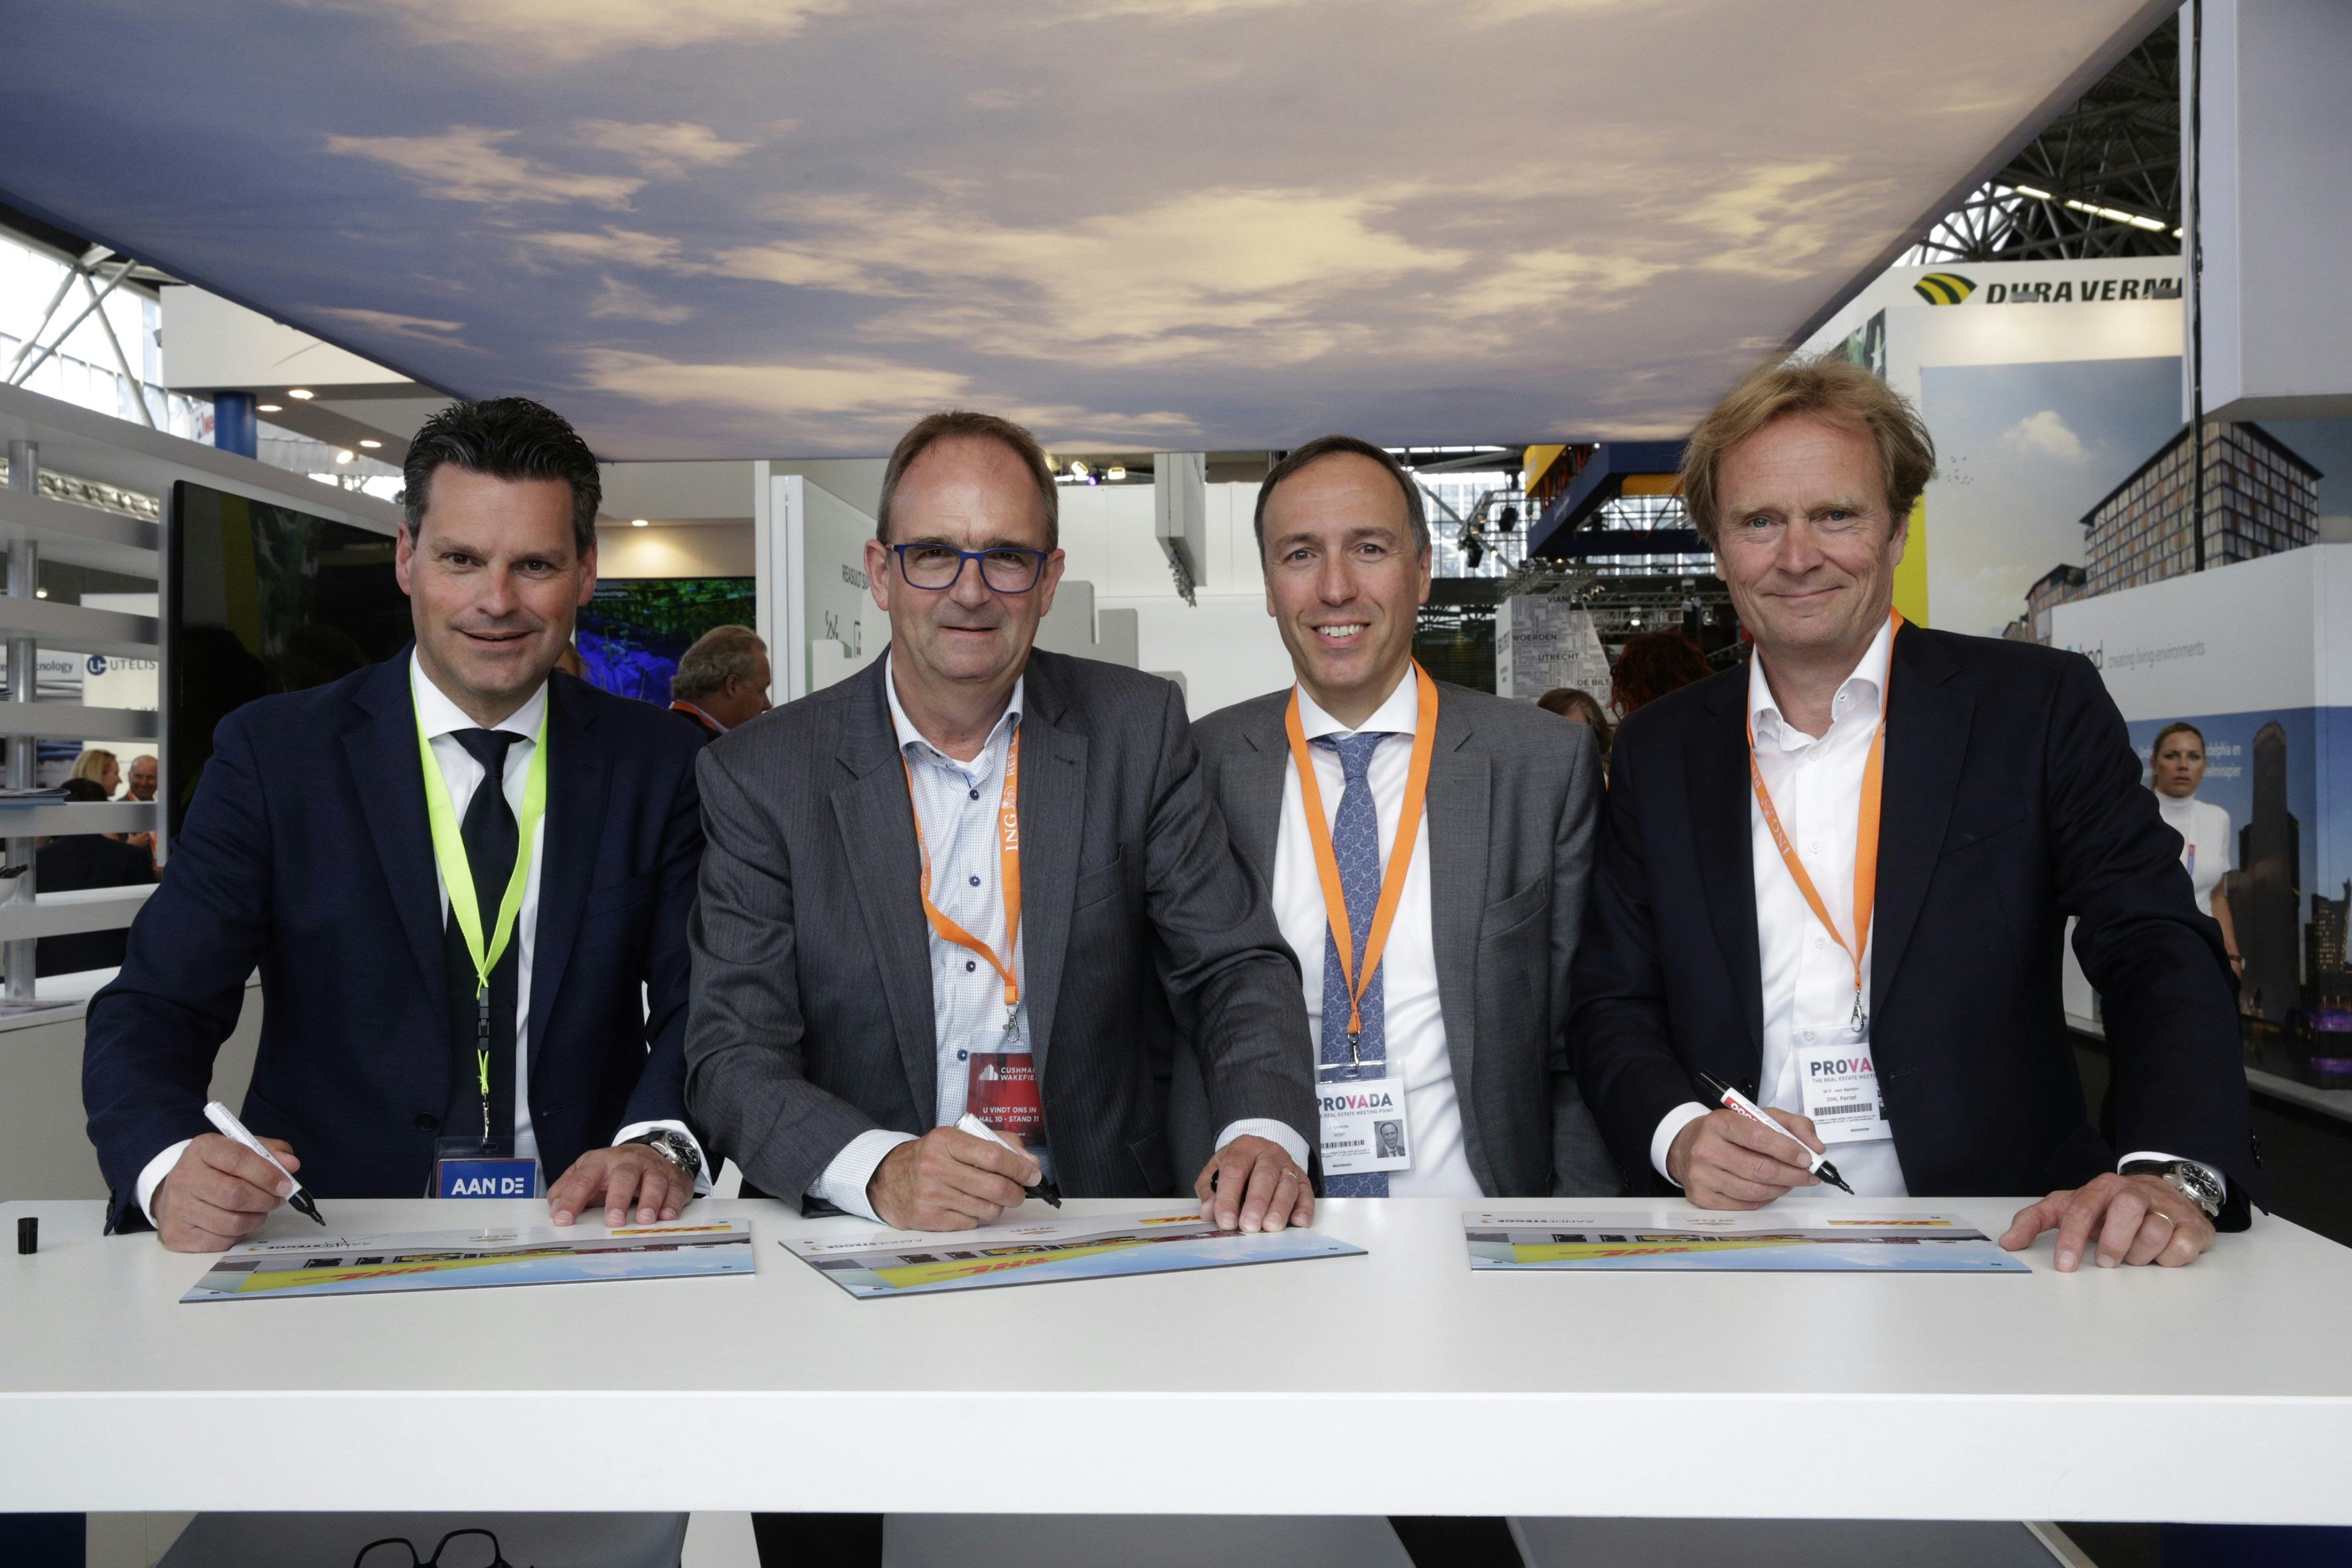 Op de Provada-beurs in de RAI werd de aannemingsovereenkomst ondertekend voor realisatie van een nieuw sorteercentrum van DHL Parcel in Amsterdam. Vlnr : Marco van der Laan (directeur Aan de Stegge), Rien van Ast (directeur Nederland, WDP), Joost Uwents (bestuursvoorzitter WDP) en Wouter van Benten (CEO DHL Parcel Benelux).